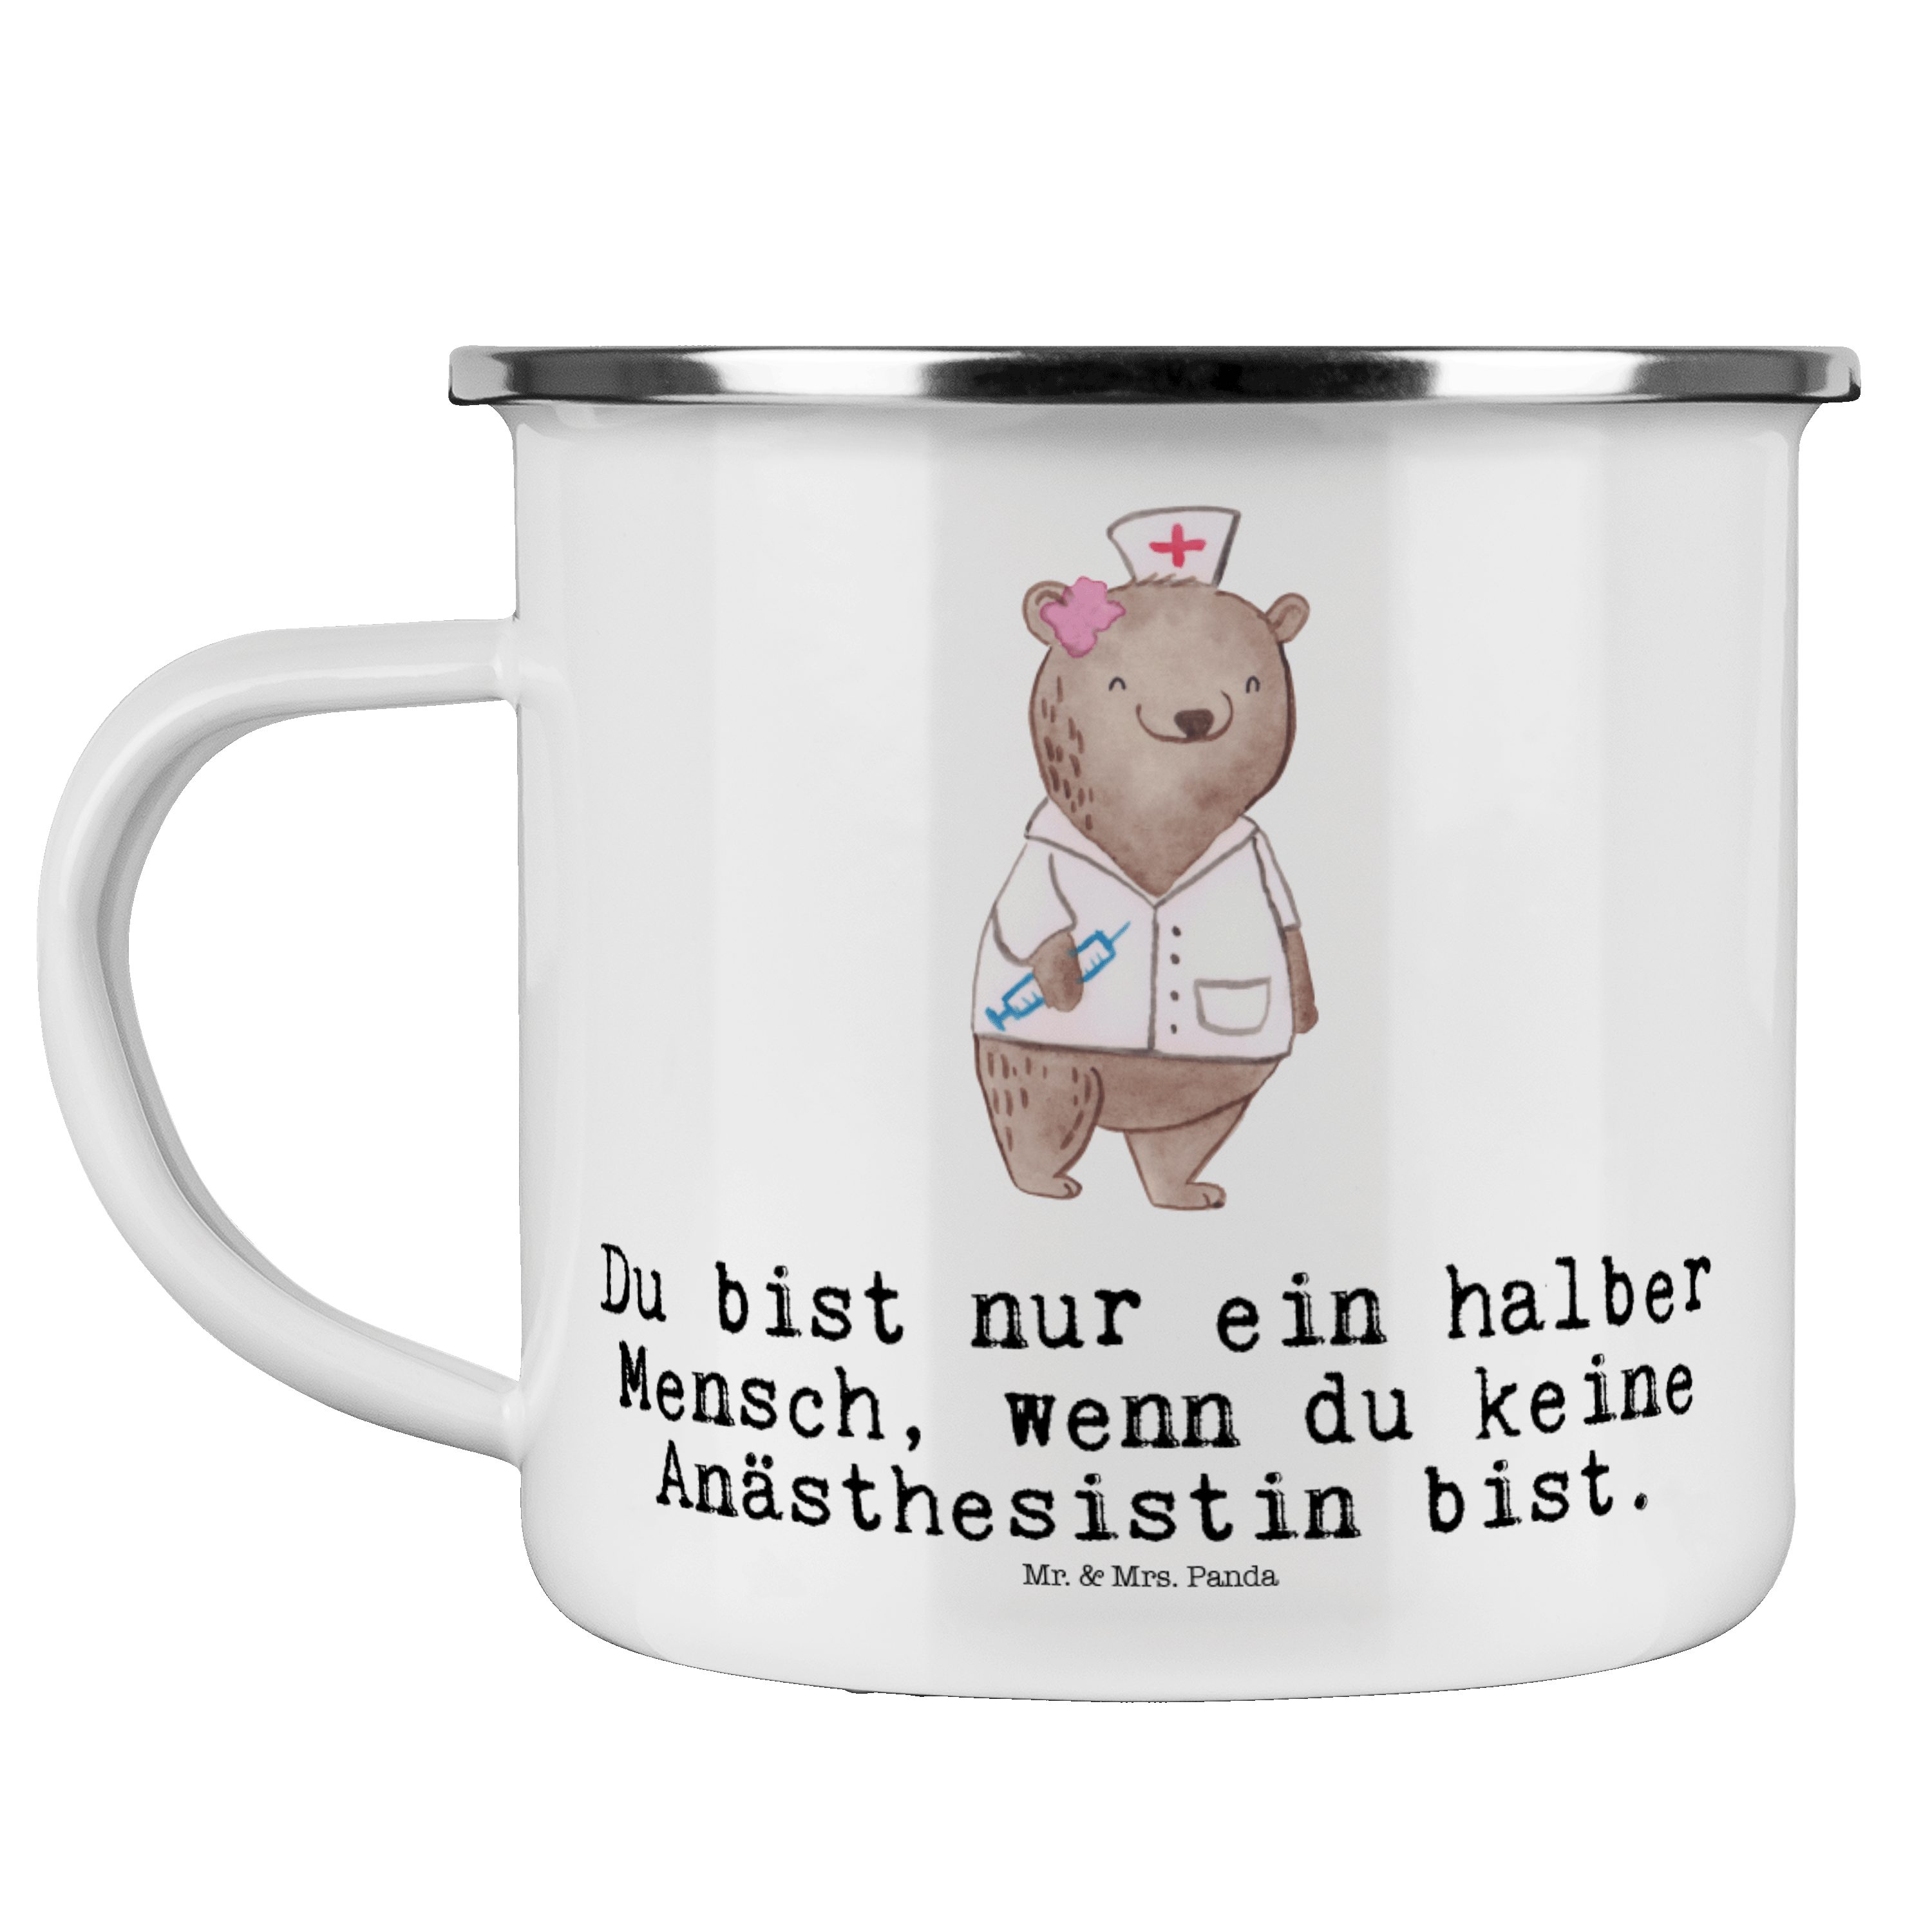 Mr. & Mrs. Panda Becher Anästhesistin mit Herz - Weiß - Geschenk, Studium, Kollegin, Kaffee B, Emaille | Becher